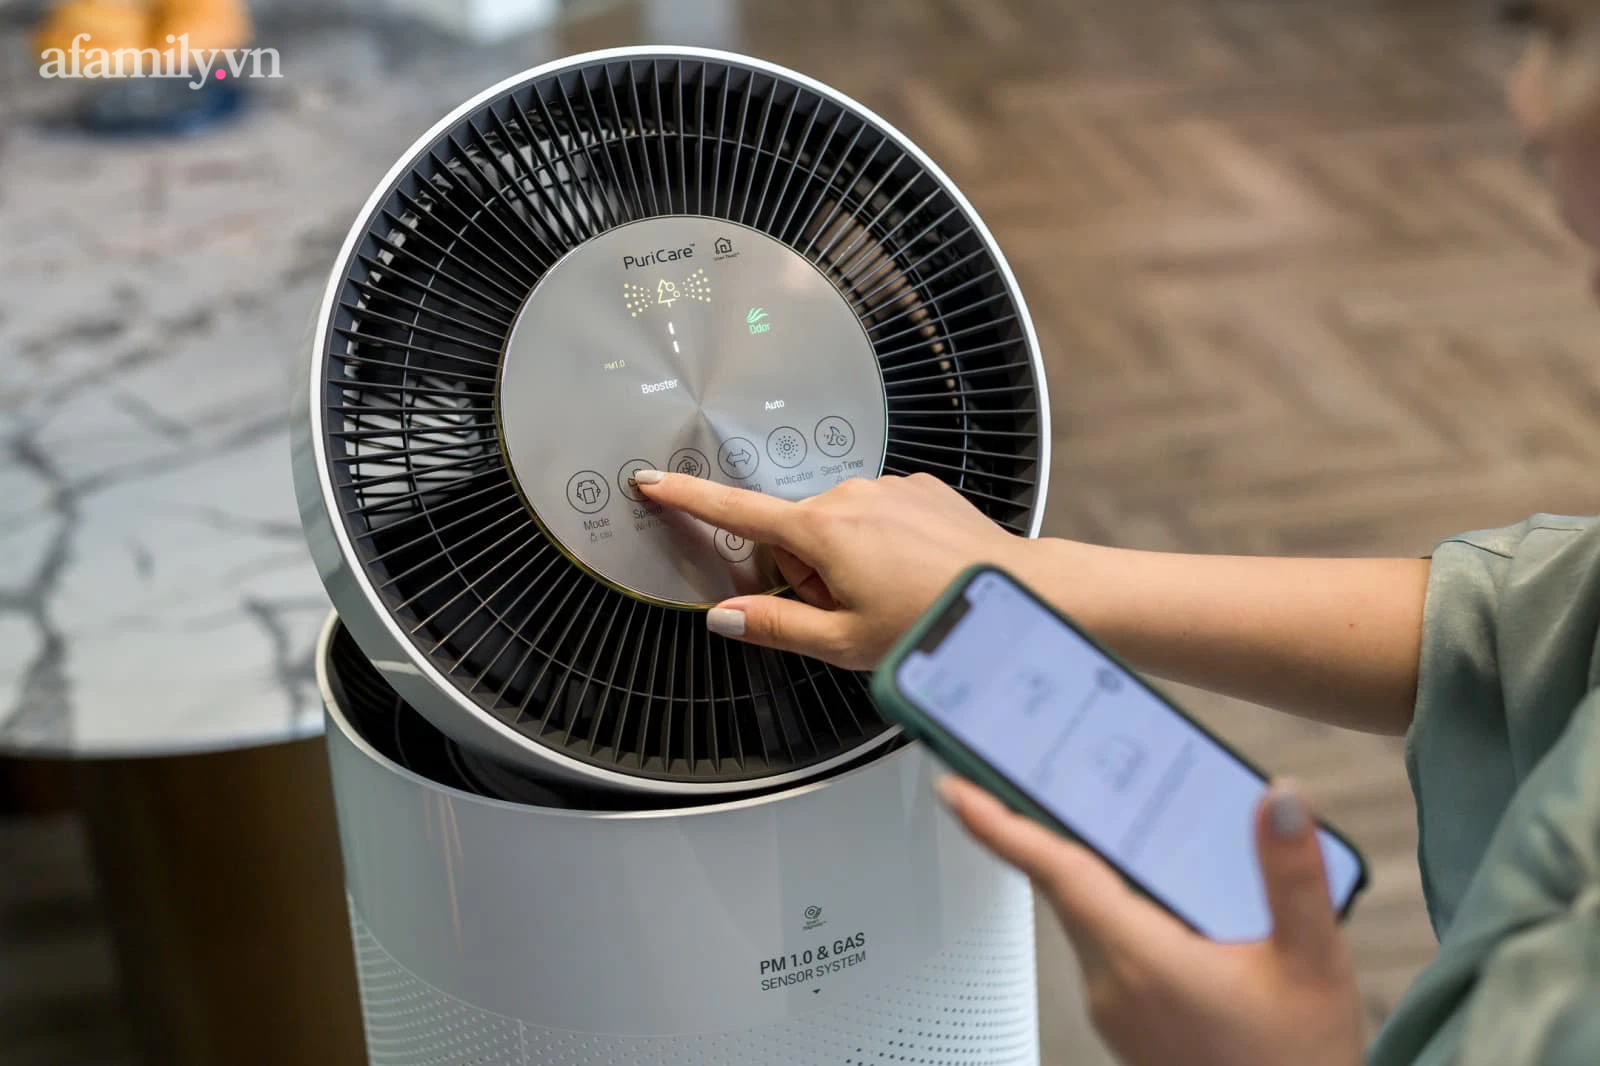 Admin Nghiện nhà review nhanh 5 món đồ công nghệ đang sử dụng: Từ máy lọc không khí đến máy giặt sấy chị em có thể &quot;học lỏm&quot; mua về ngay - Ảnh 4.